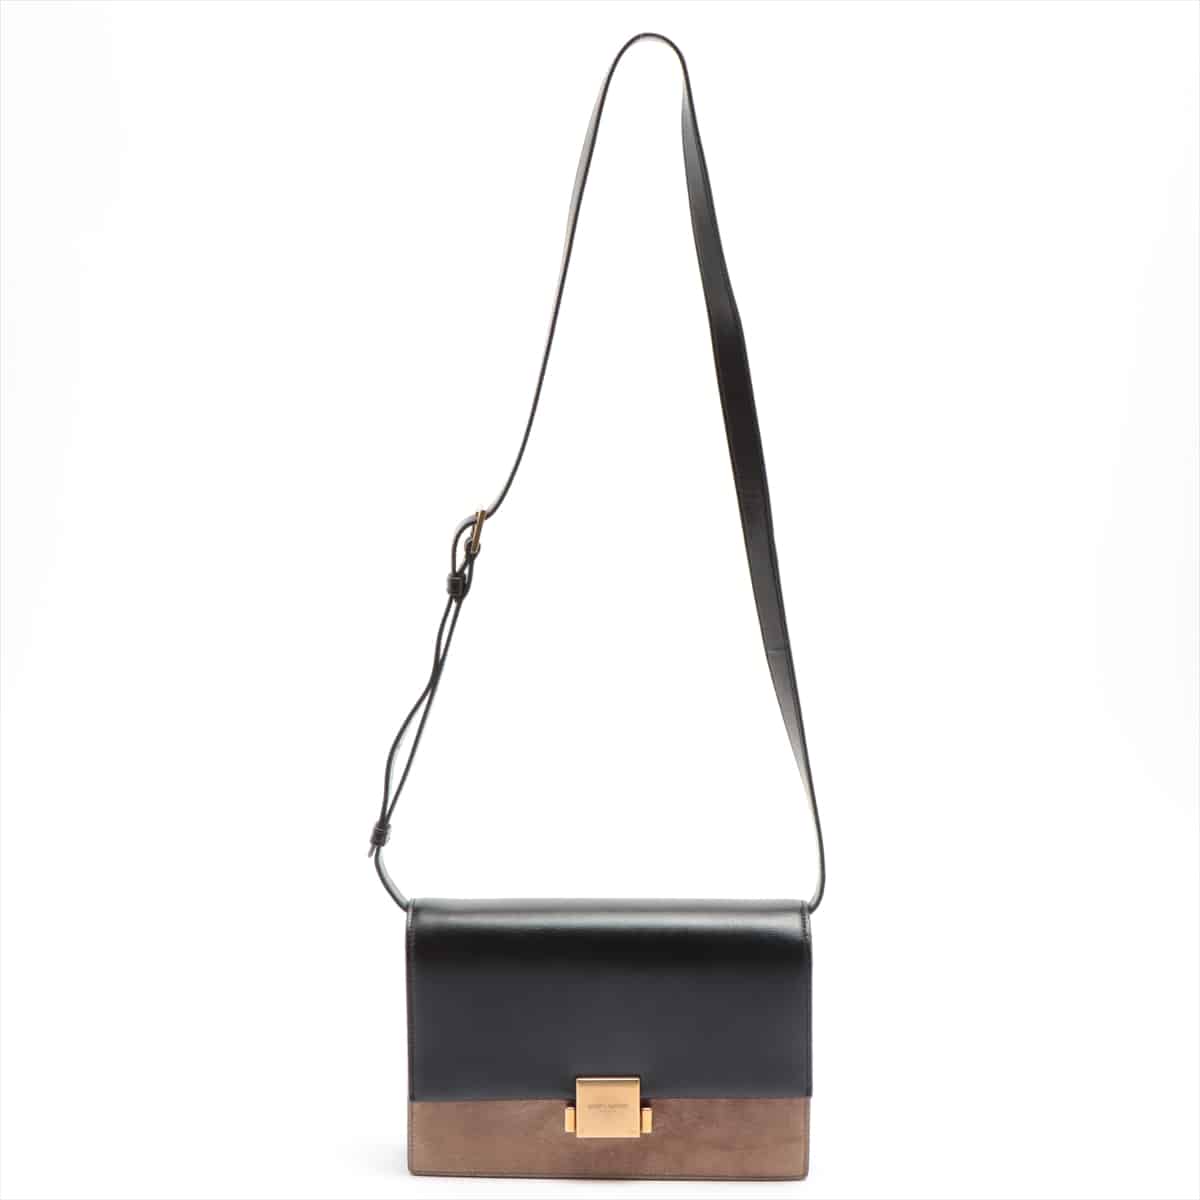 Saint Laurent Paris Bellechasse Leather & suede Shoulder bag black x beige 482044